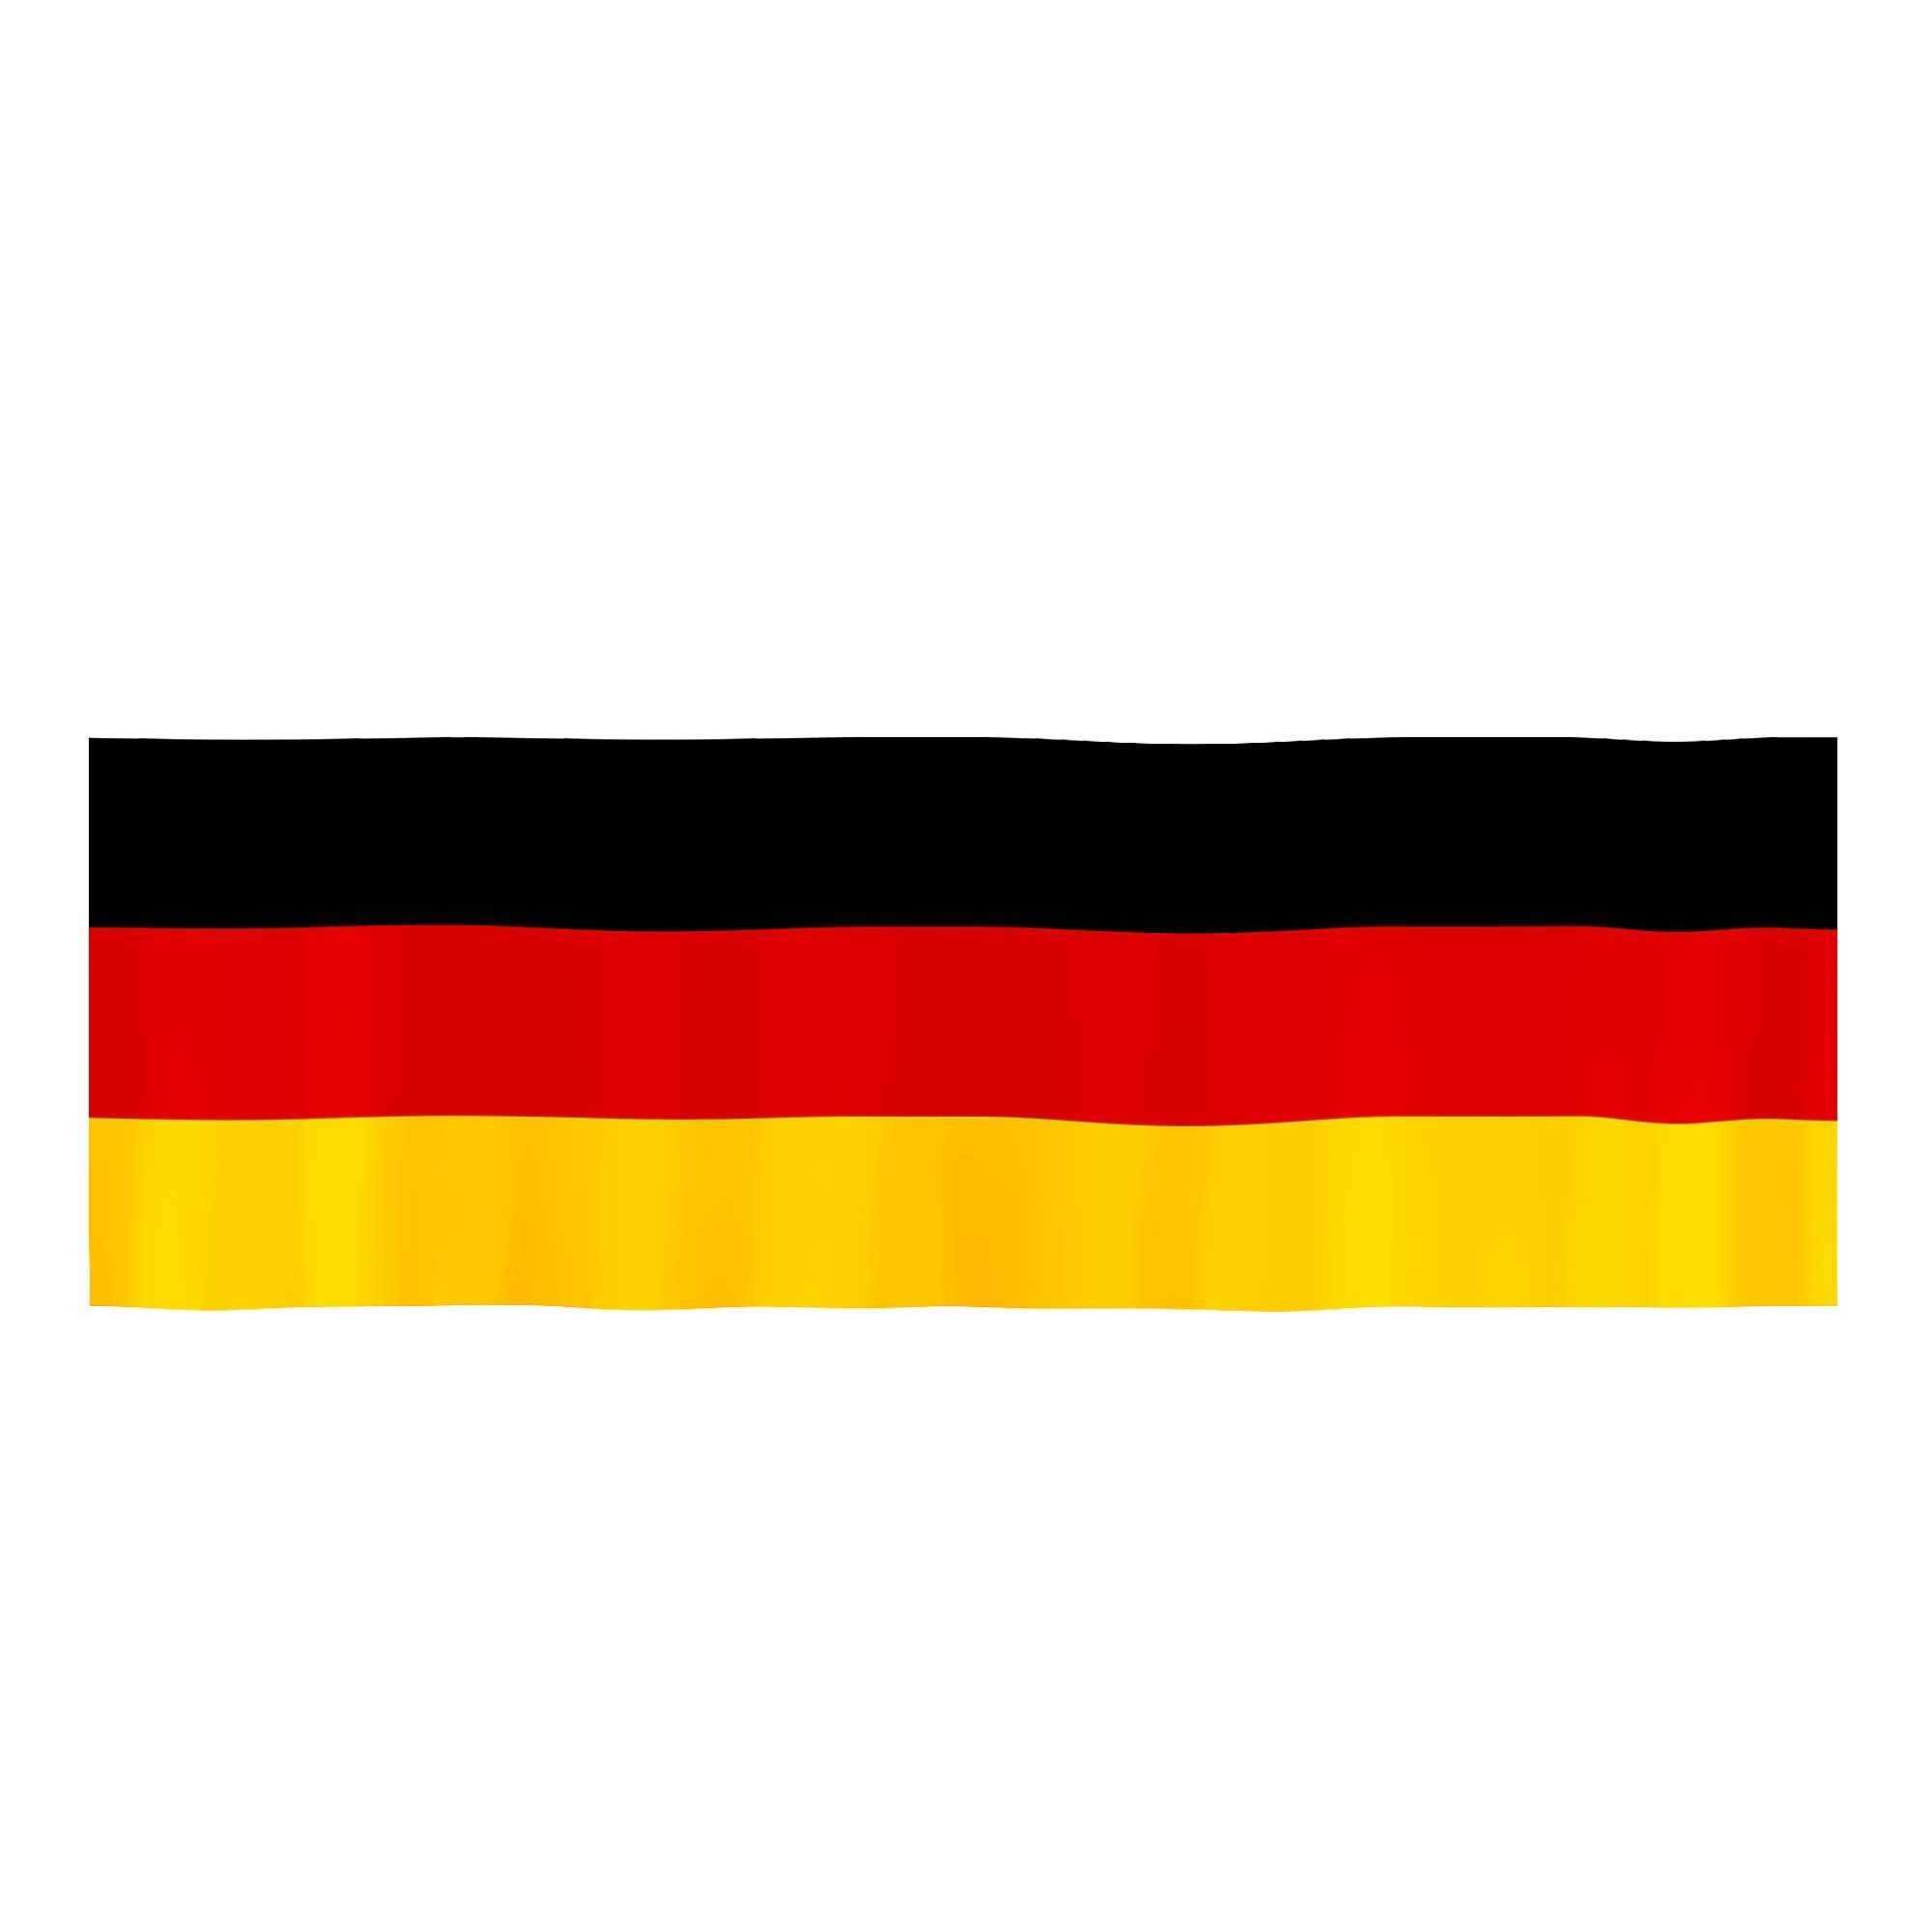 Taffstyle Fahne Deutschland XXL Balkonfahne 300cm x 90cm Flagge, Fahne Groß  Schwarz Rot Gold Fussball EM WM Länderflagge Fanartikel